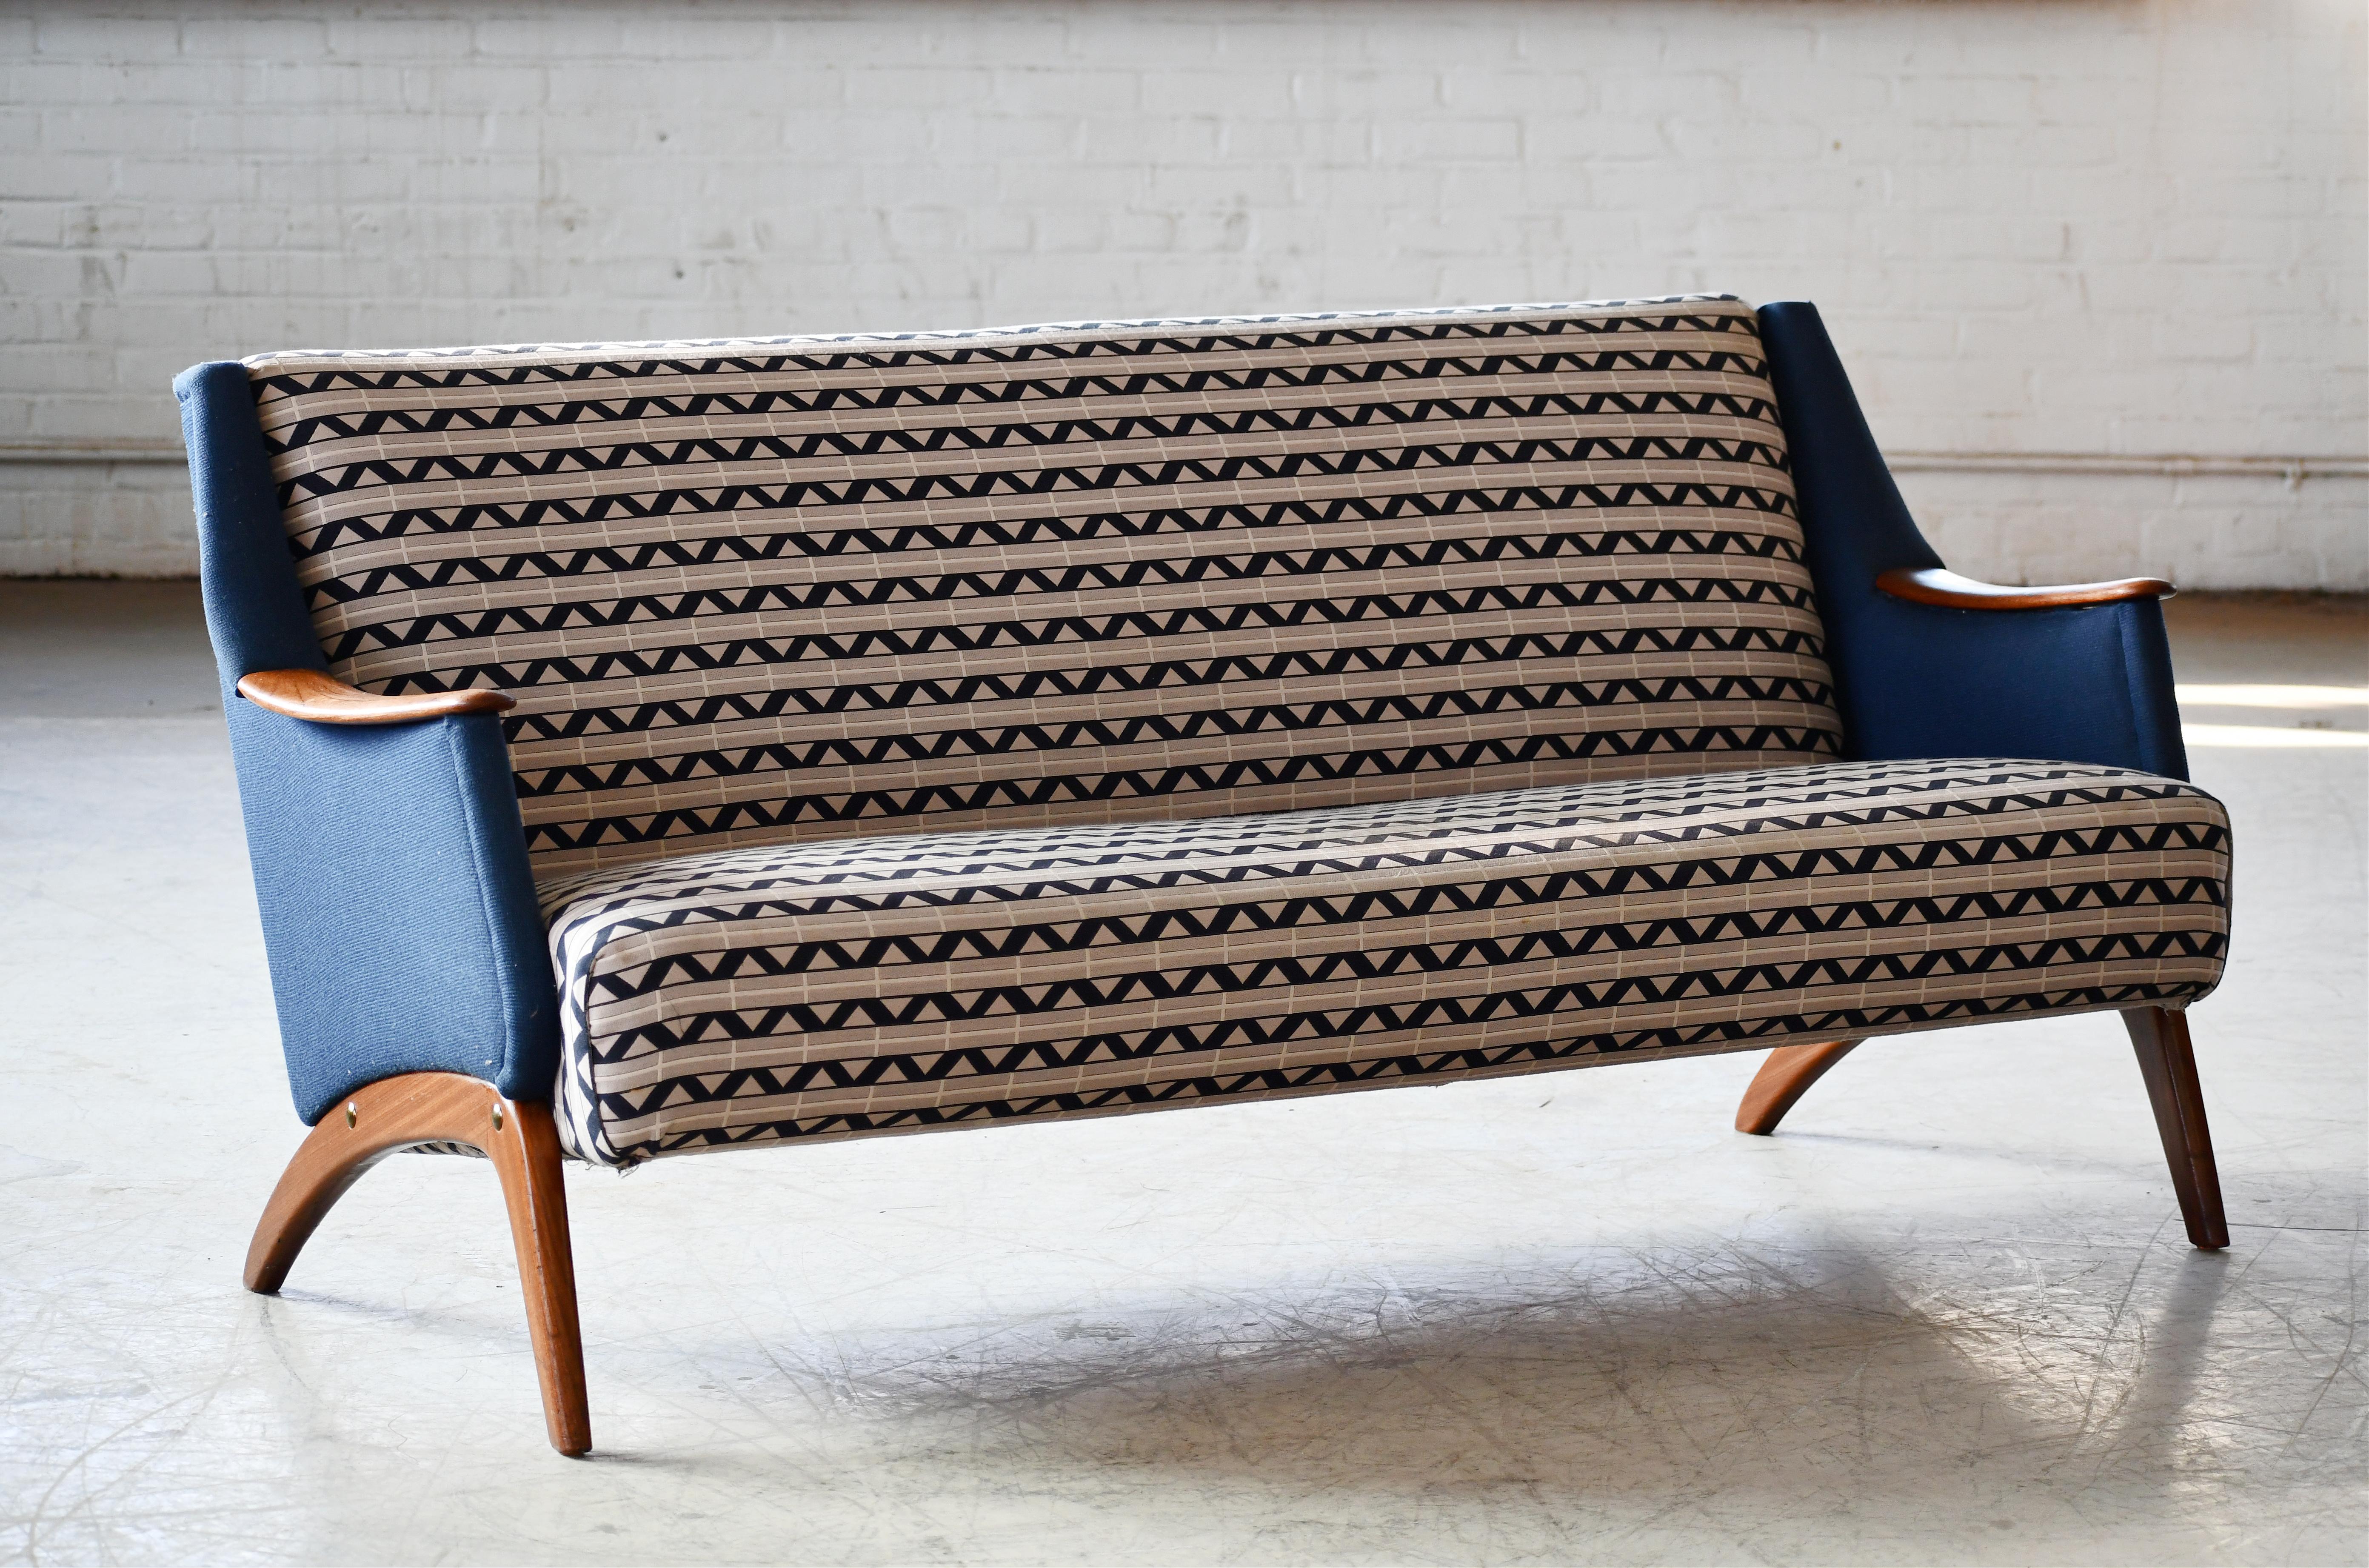 Sehr klassisches und ultracooles dänisches Dreisitzsofa, das die 1950er Jahre verkörpert und an den Designstil von Kurt Olsen erinnert. Aufgebaut auf einem stabilen Buchenholzrahmen und auf massiven Teakholzbeinen mit Teakholzakzenten an den